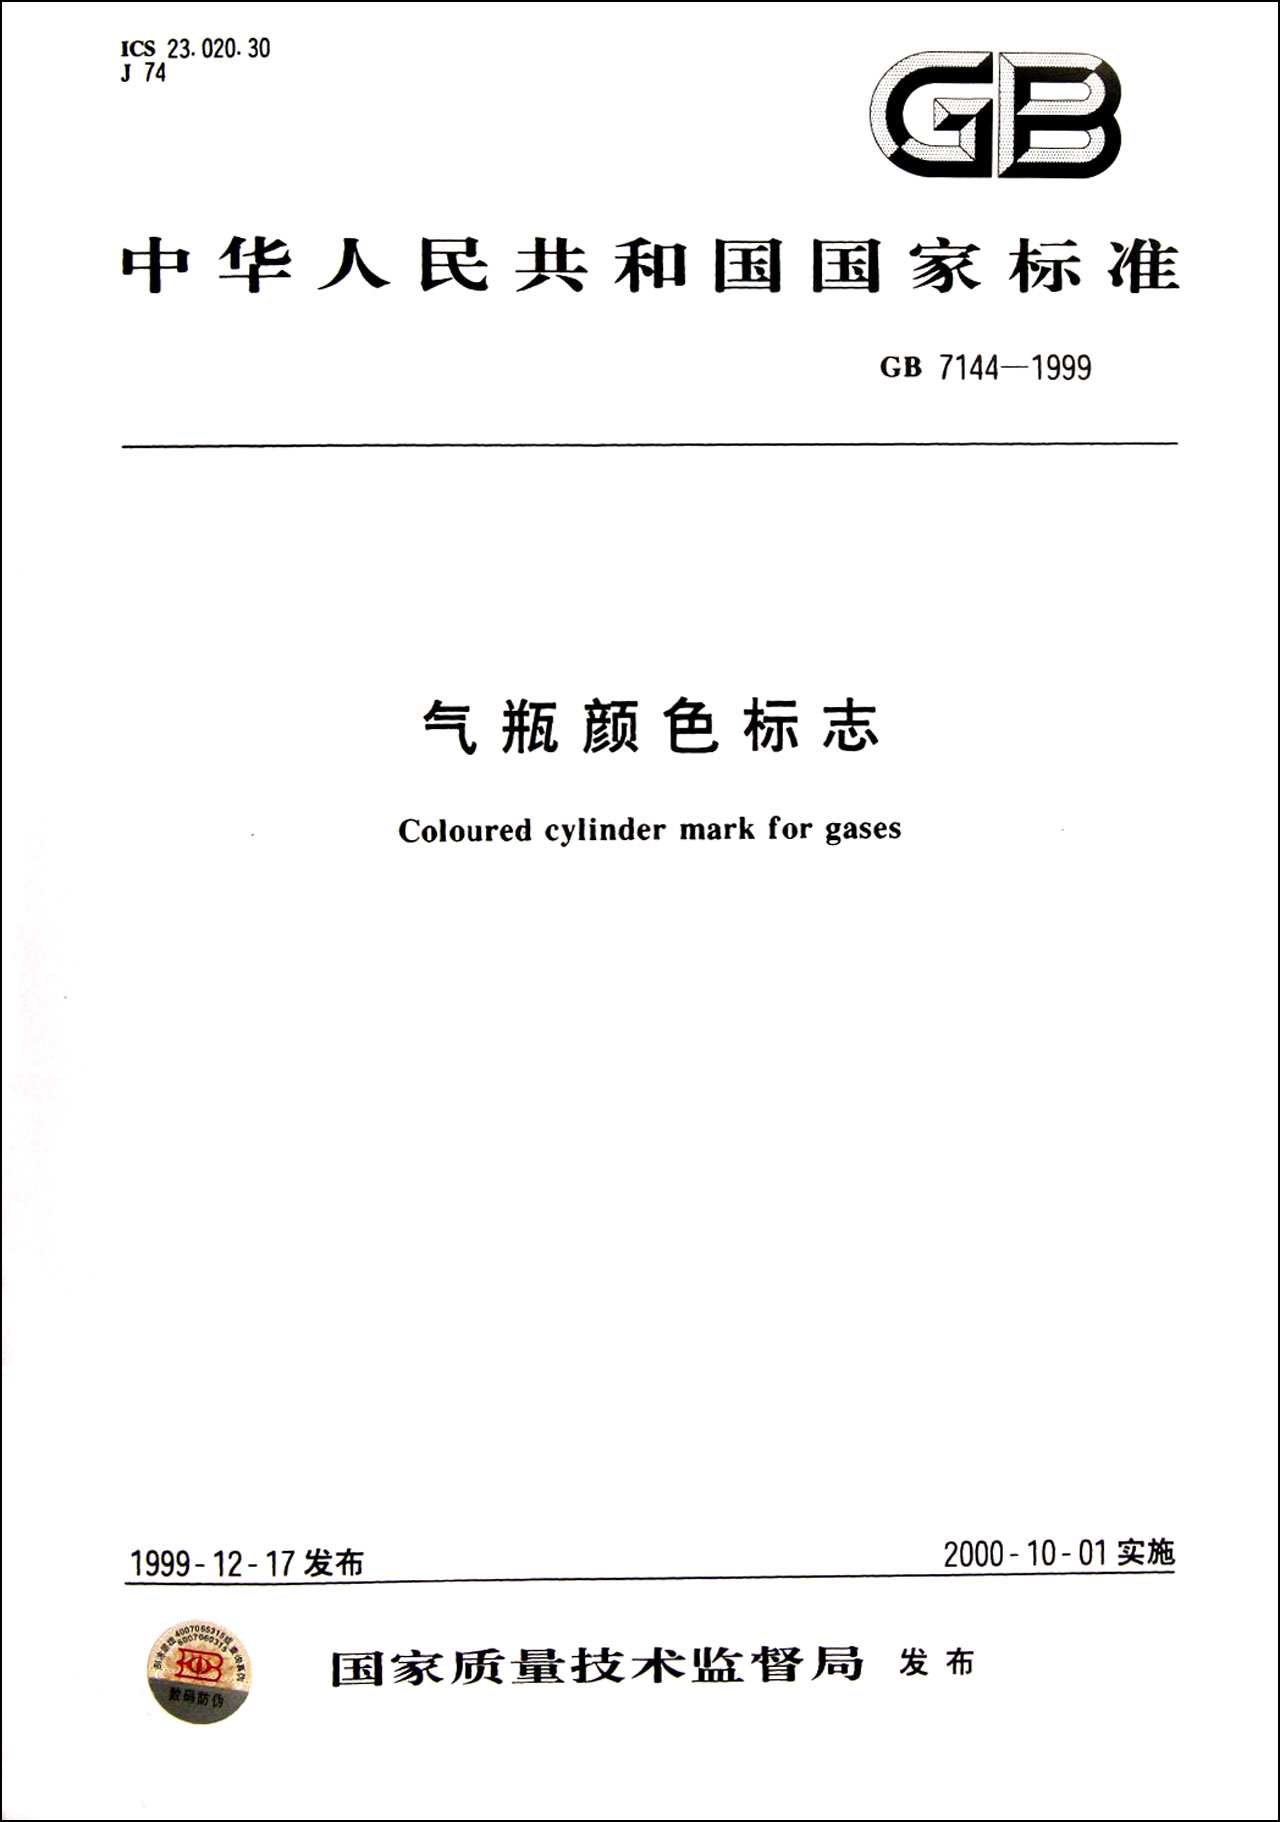 气瓶颜色标志gb7144-1999\/中华人民共和国国家标准